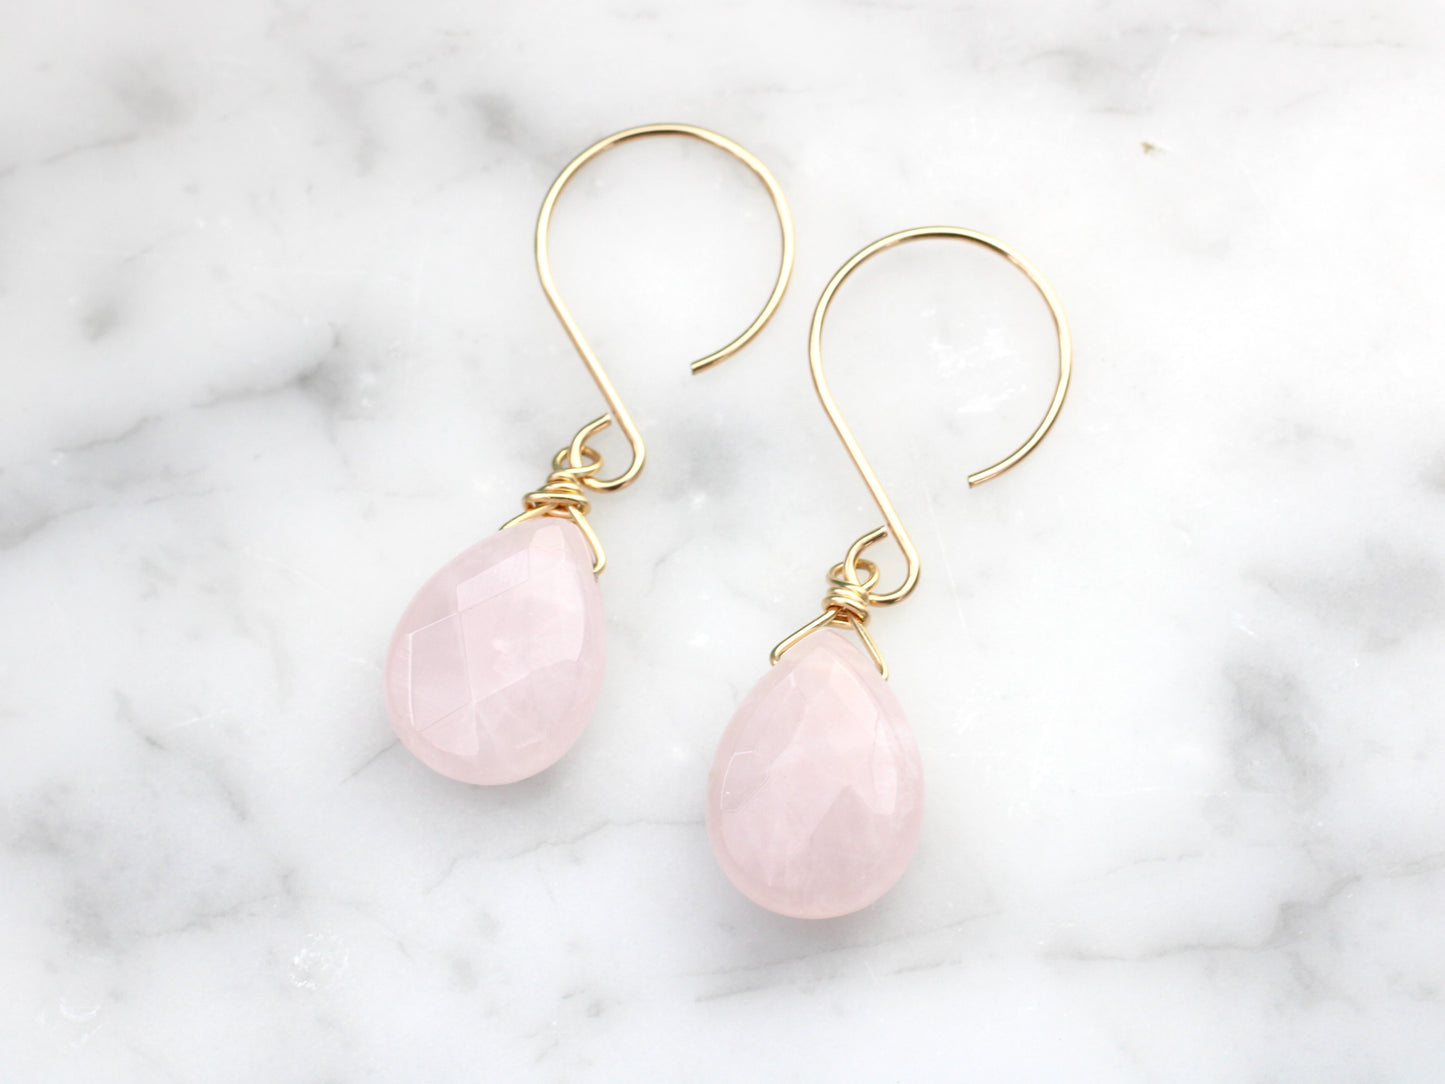 Rose quartz earrings in gold.